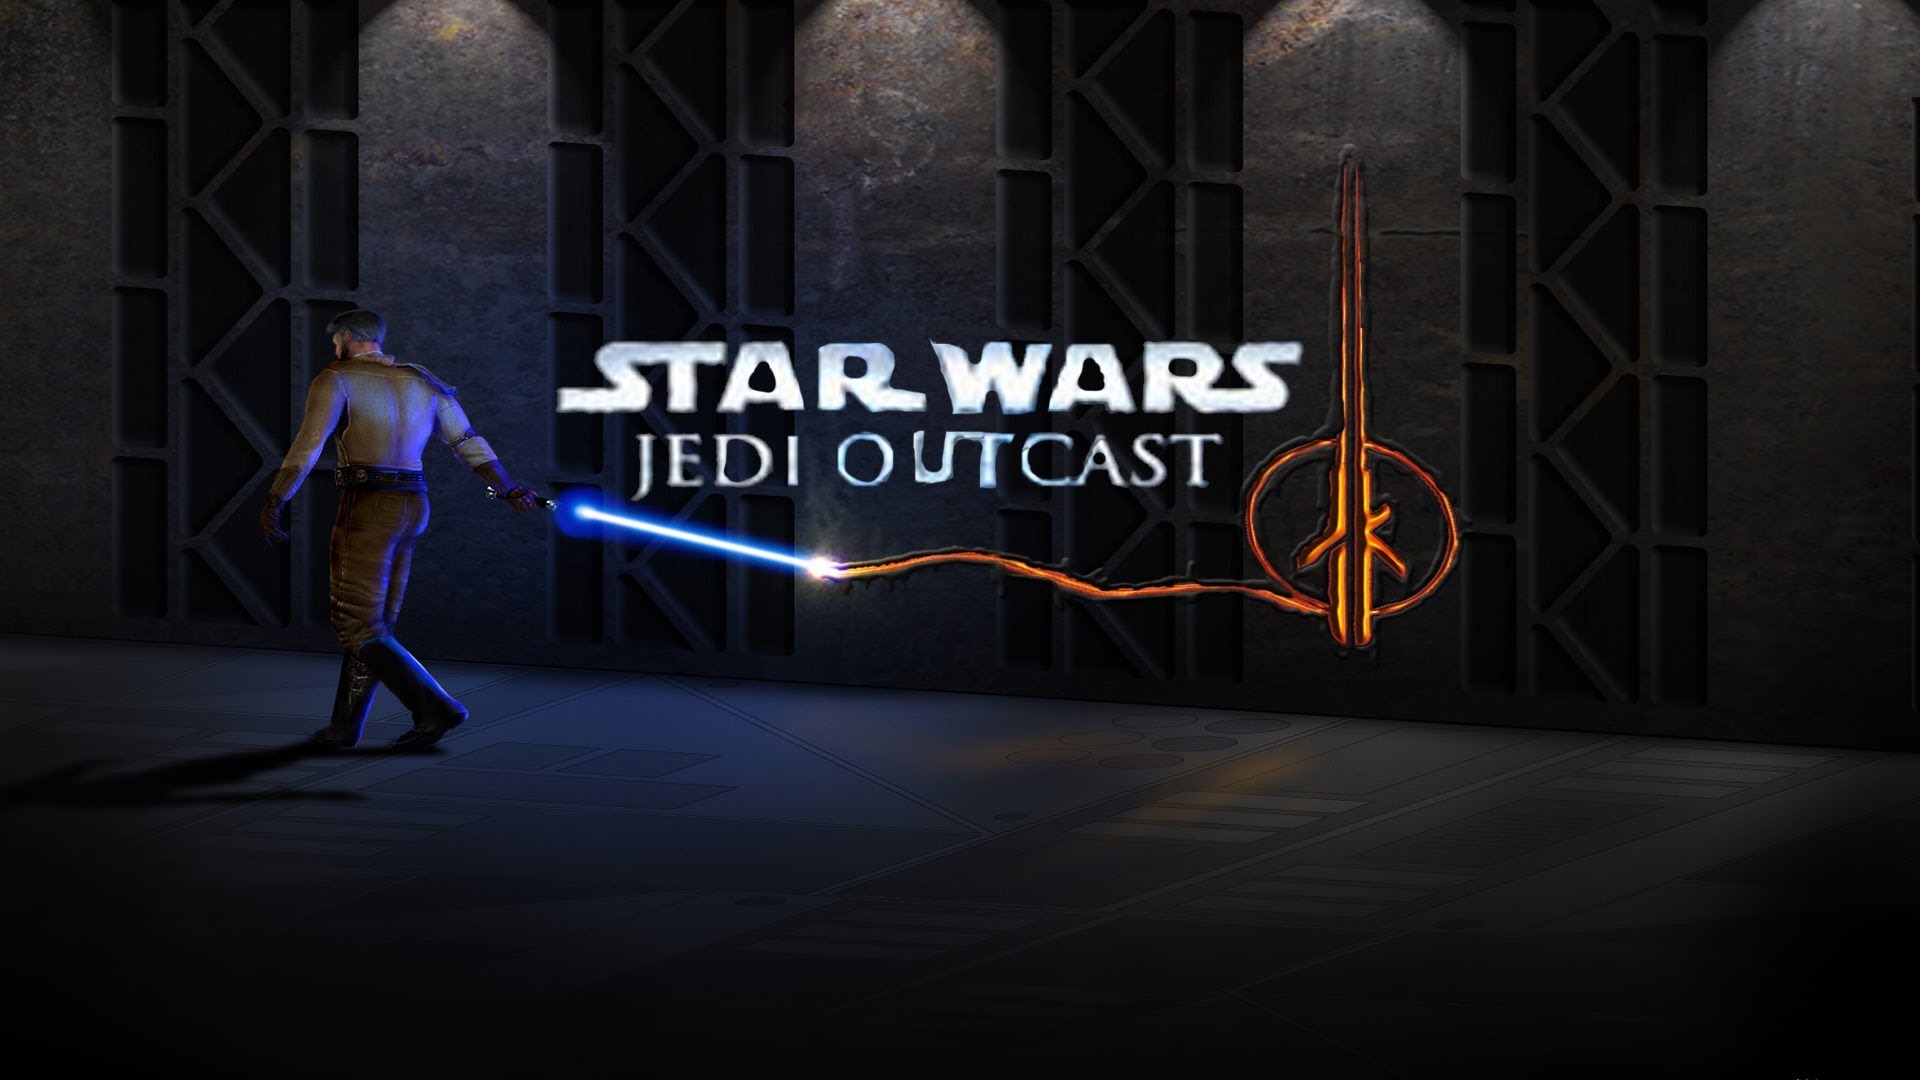 Jedi outcast games